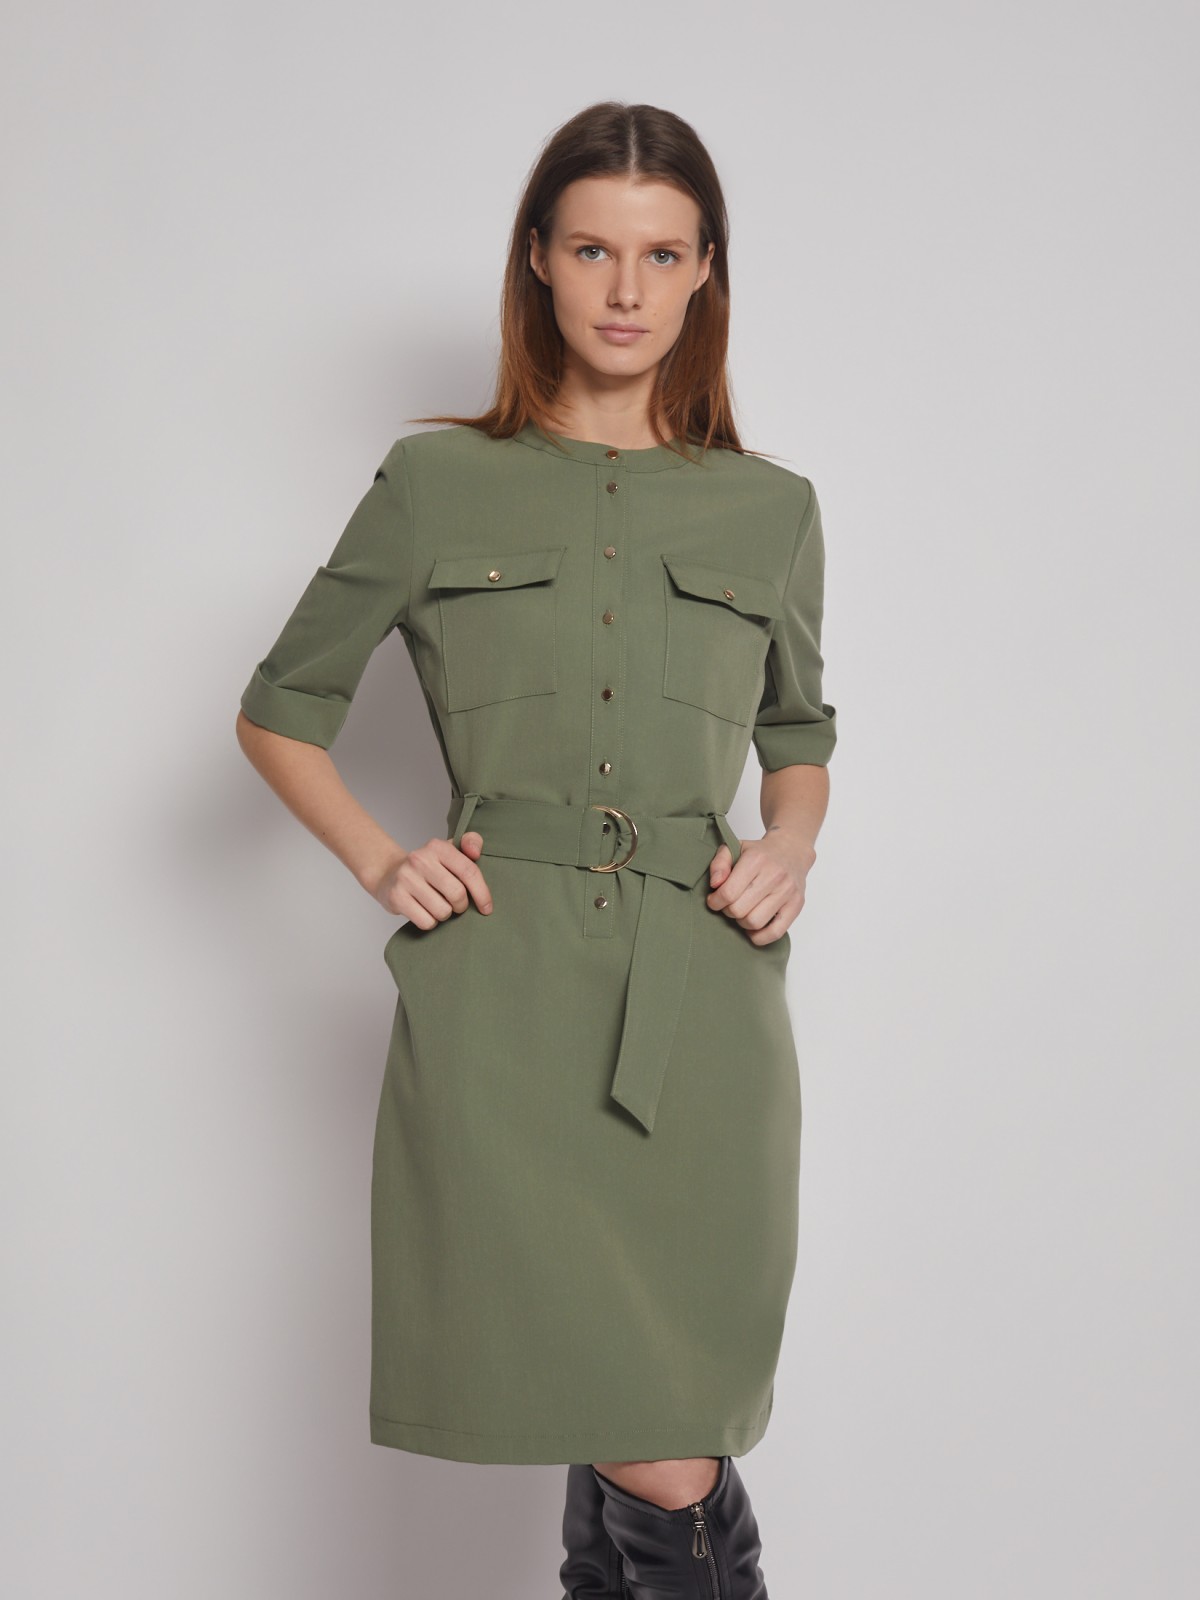 Платье-рубашка на кнопках цвета хаки с карманами - купить в интернет магазине Аржен